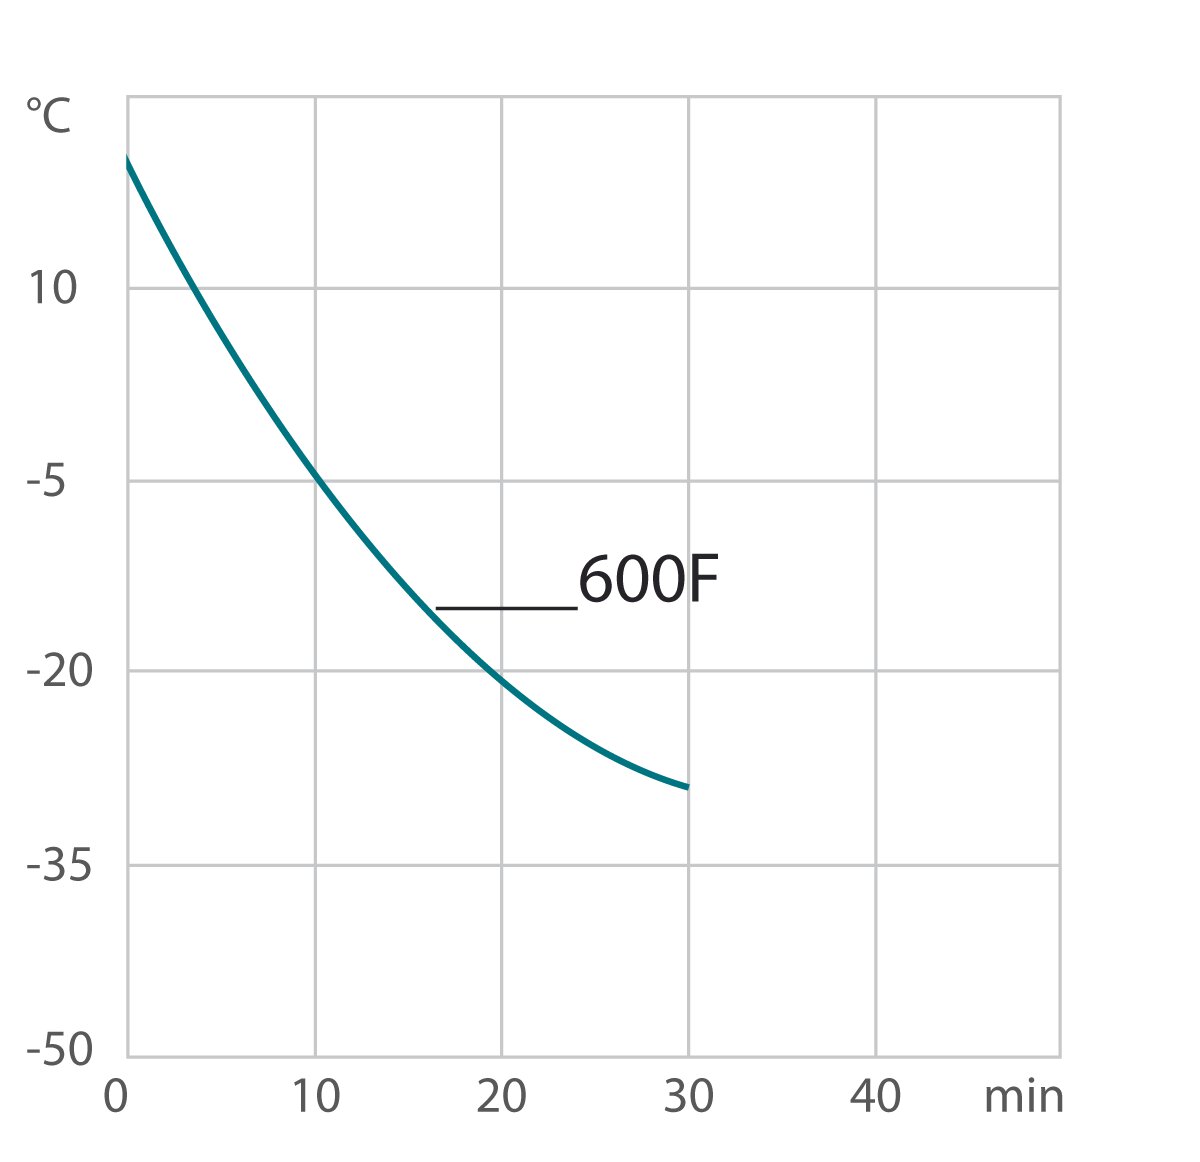 Cooling curve 600F